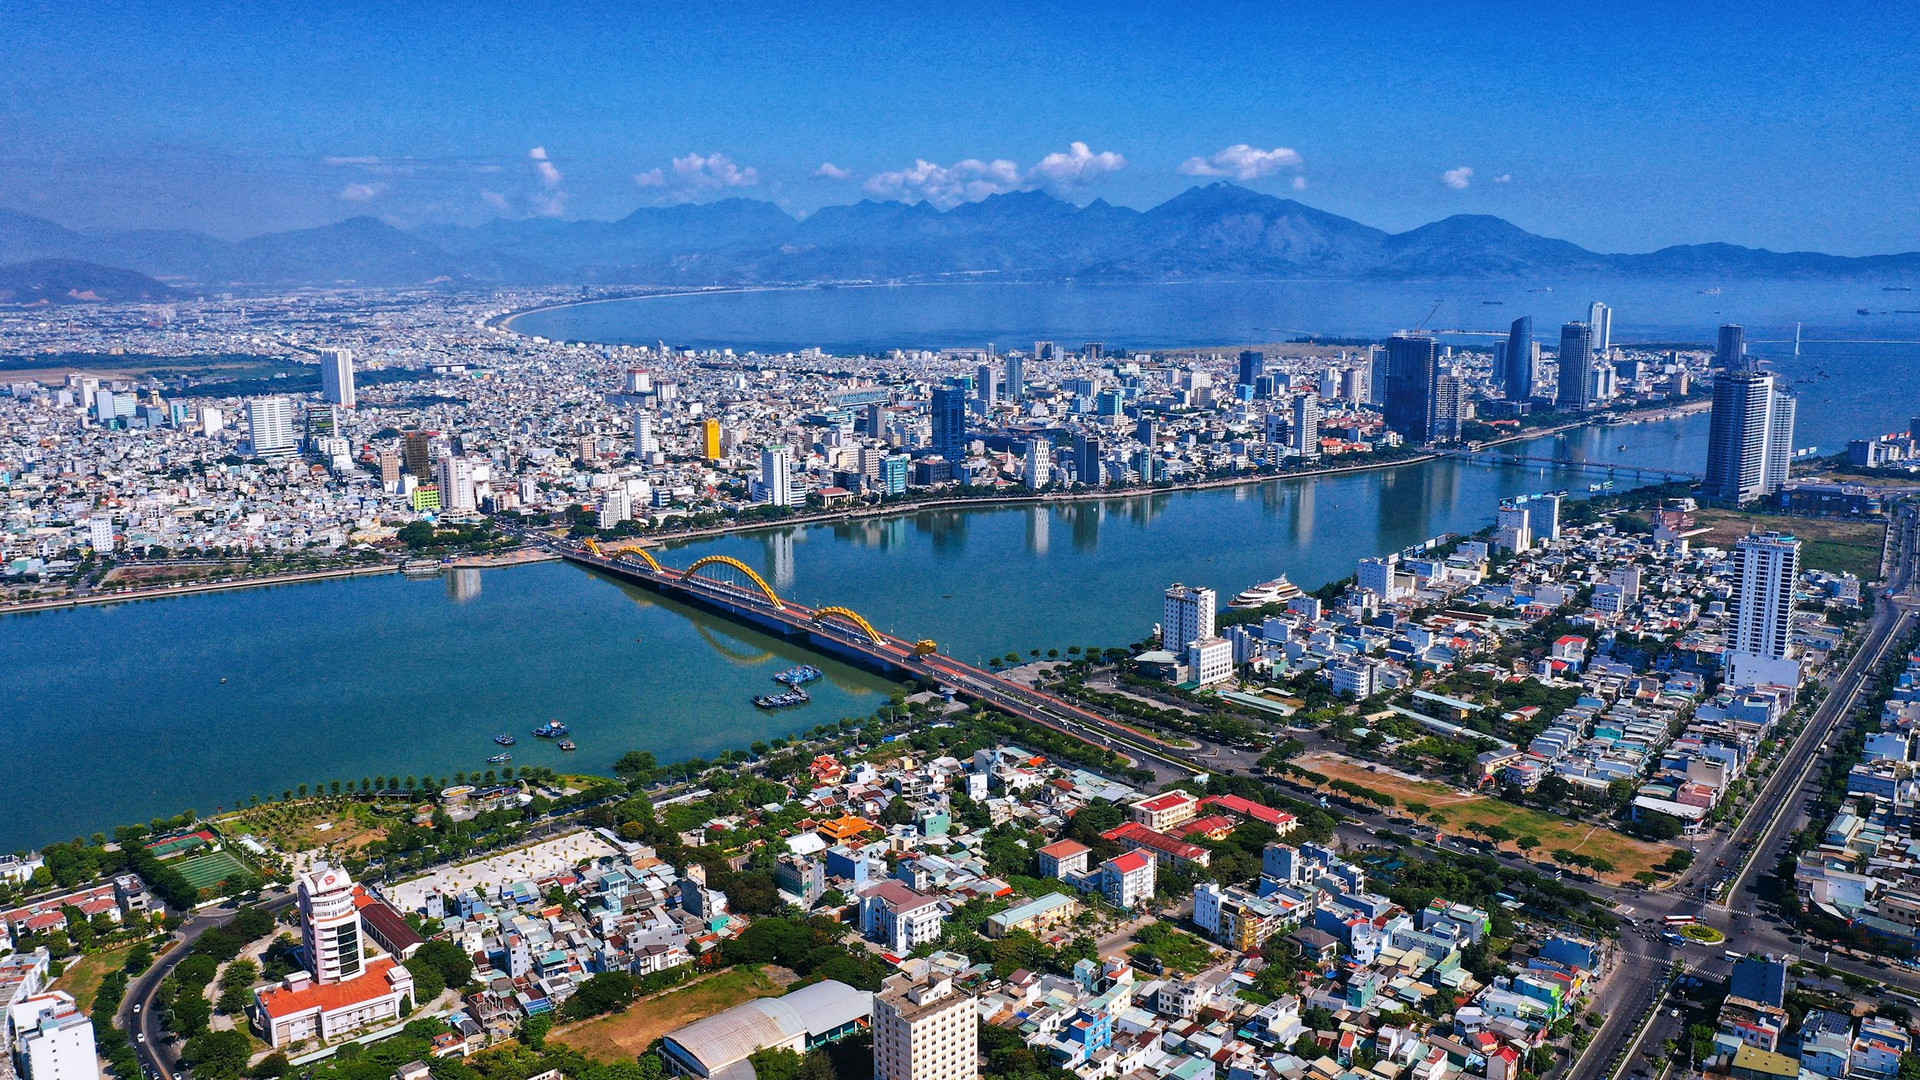 Dự án căn hộ hạng sang Peninsula Da Nang chính thức về tay Viet Nam Smart City - Viet Nam Smart City